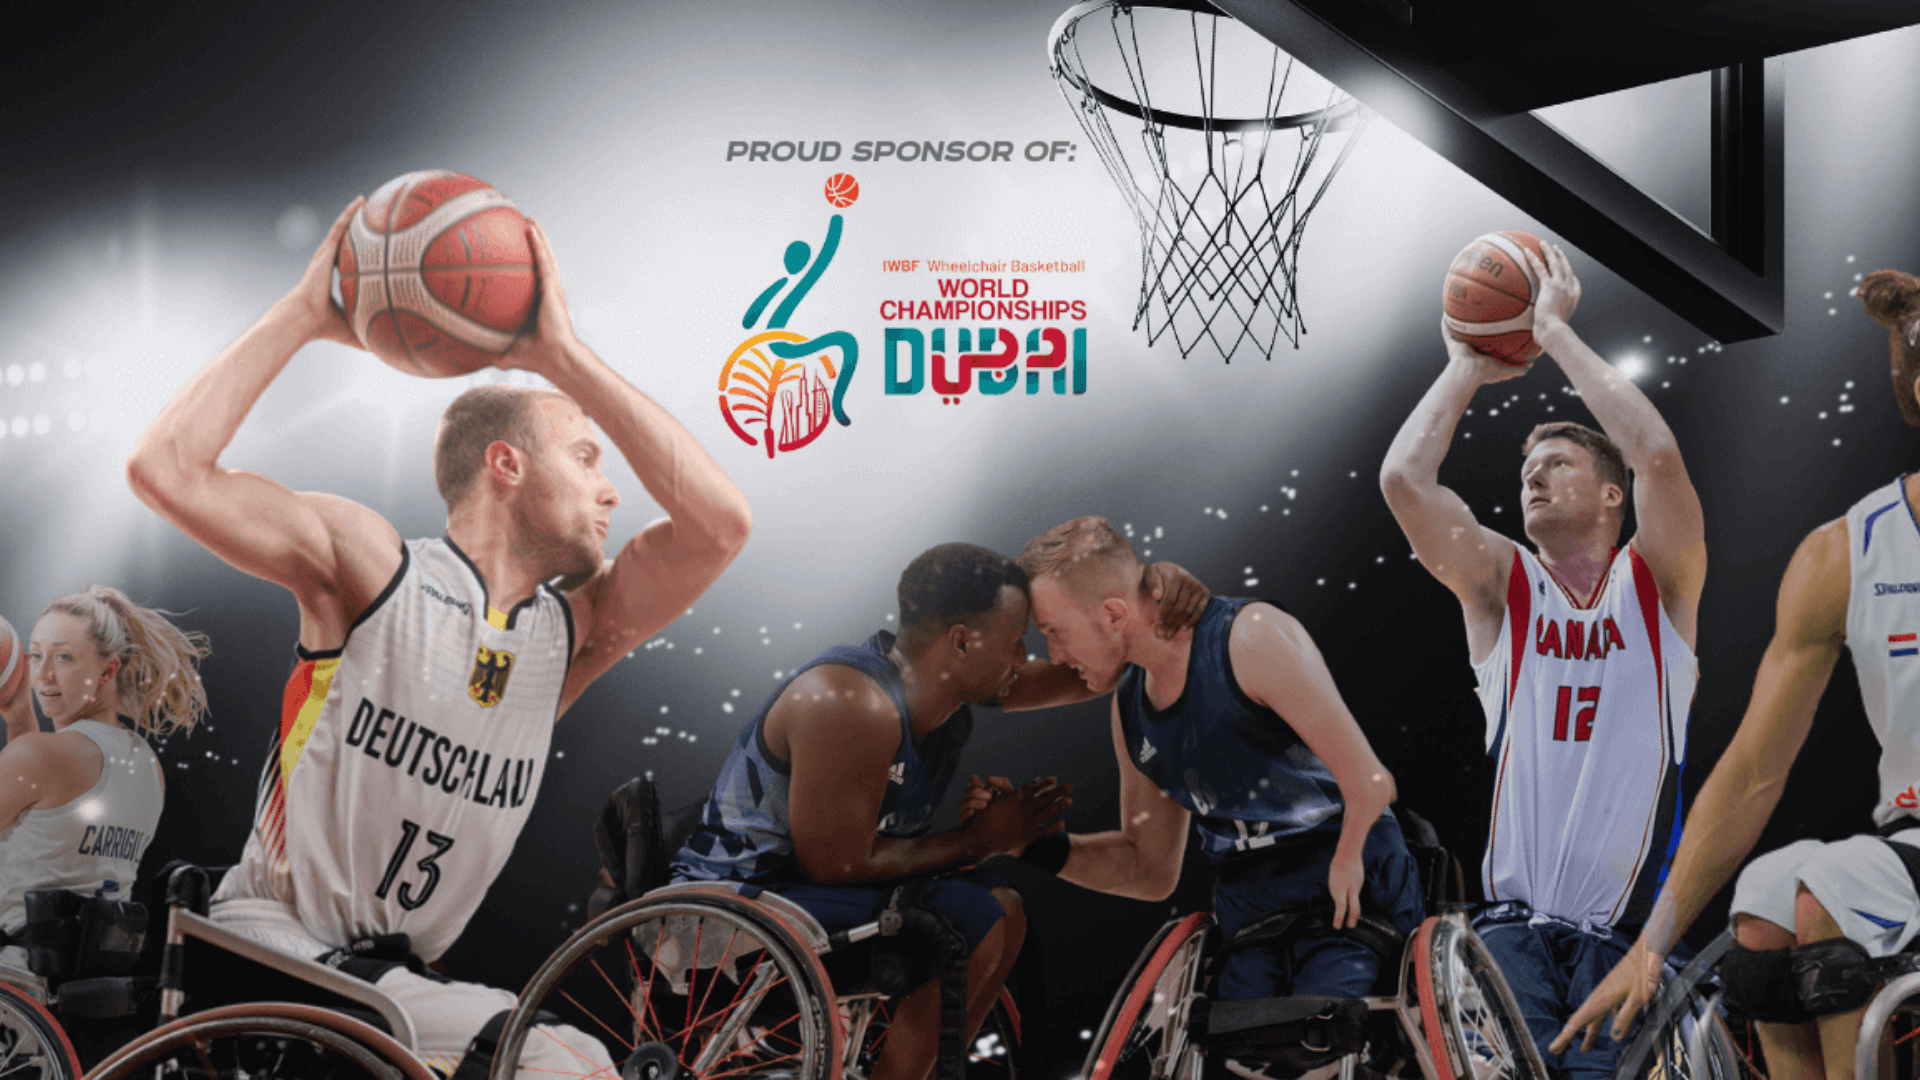 Offizieller Sponsor der Rollstuhl Basketball WM in Dubai